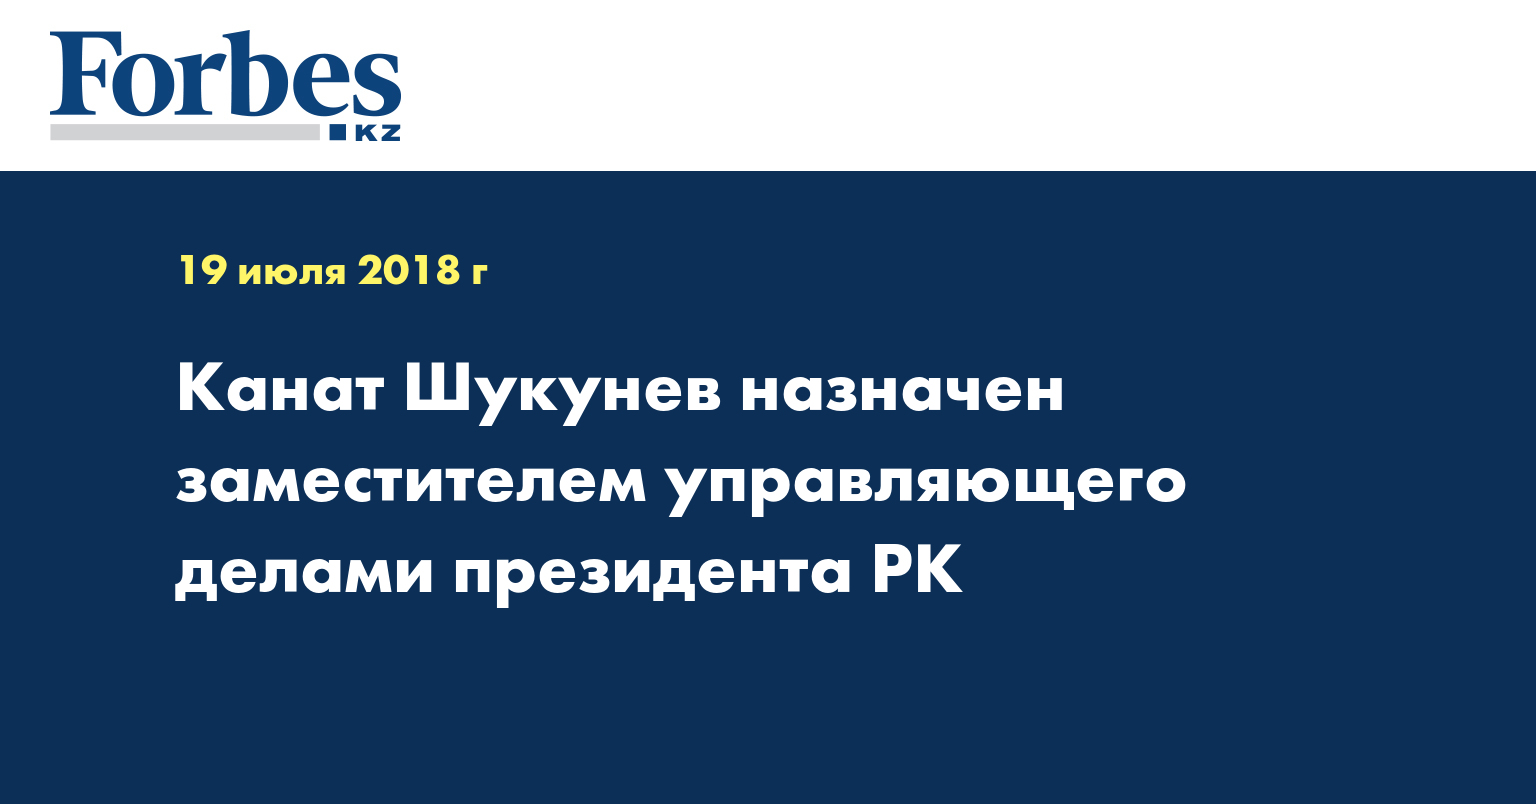 Канат Шукунев назначен заместителем управляющего делами президента РК